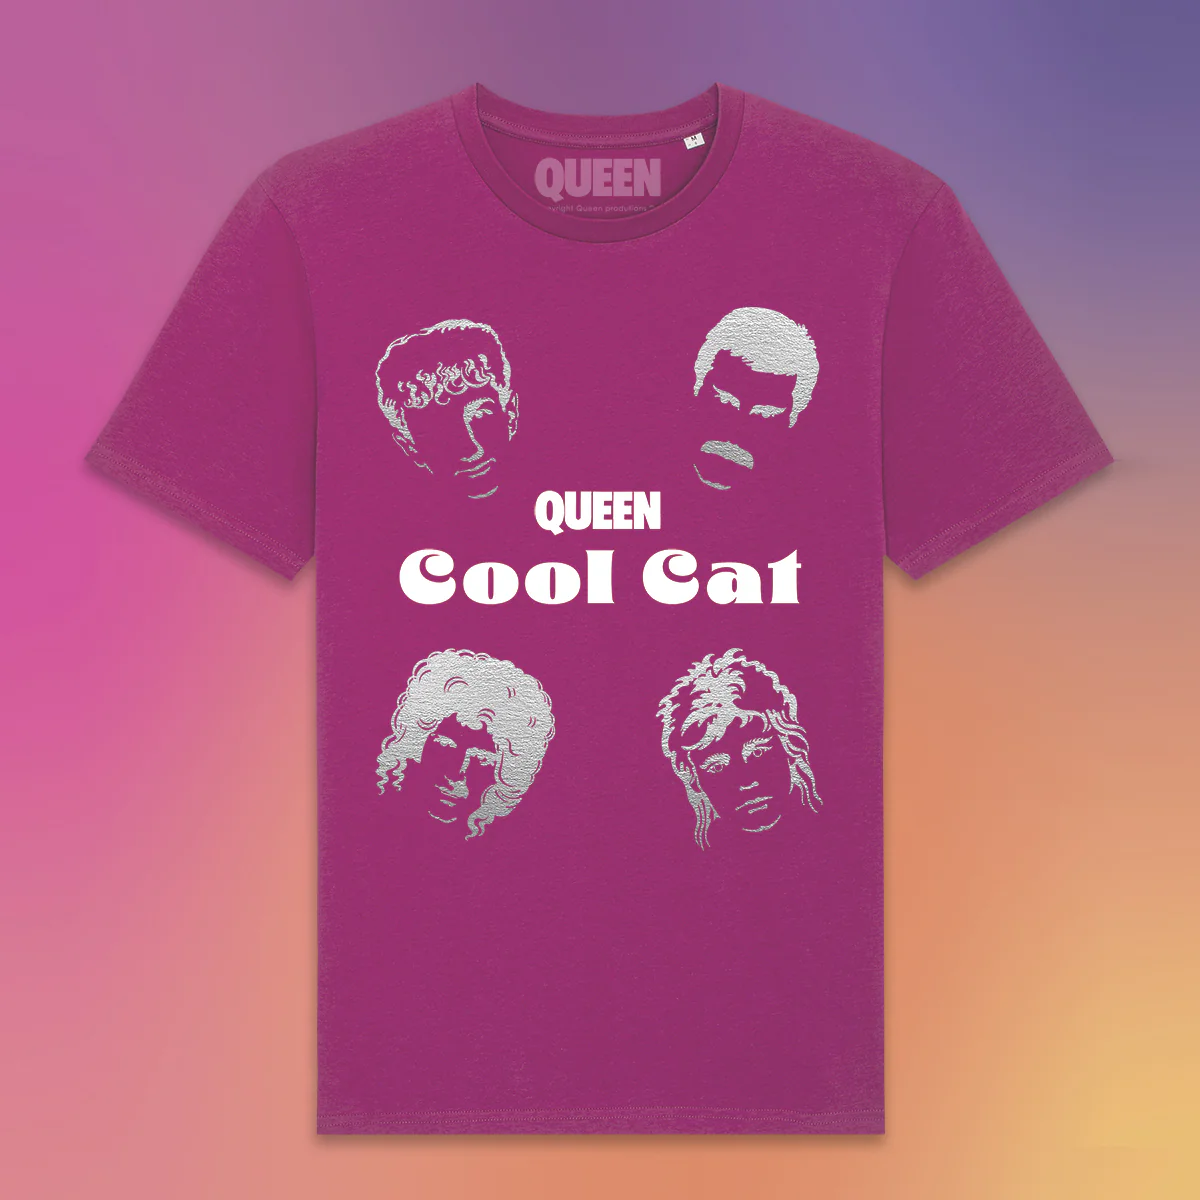 Queen Cool Cat Camiseta aqueenofmagic